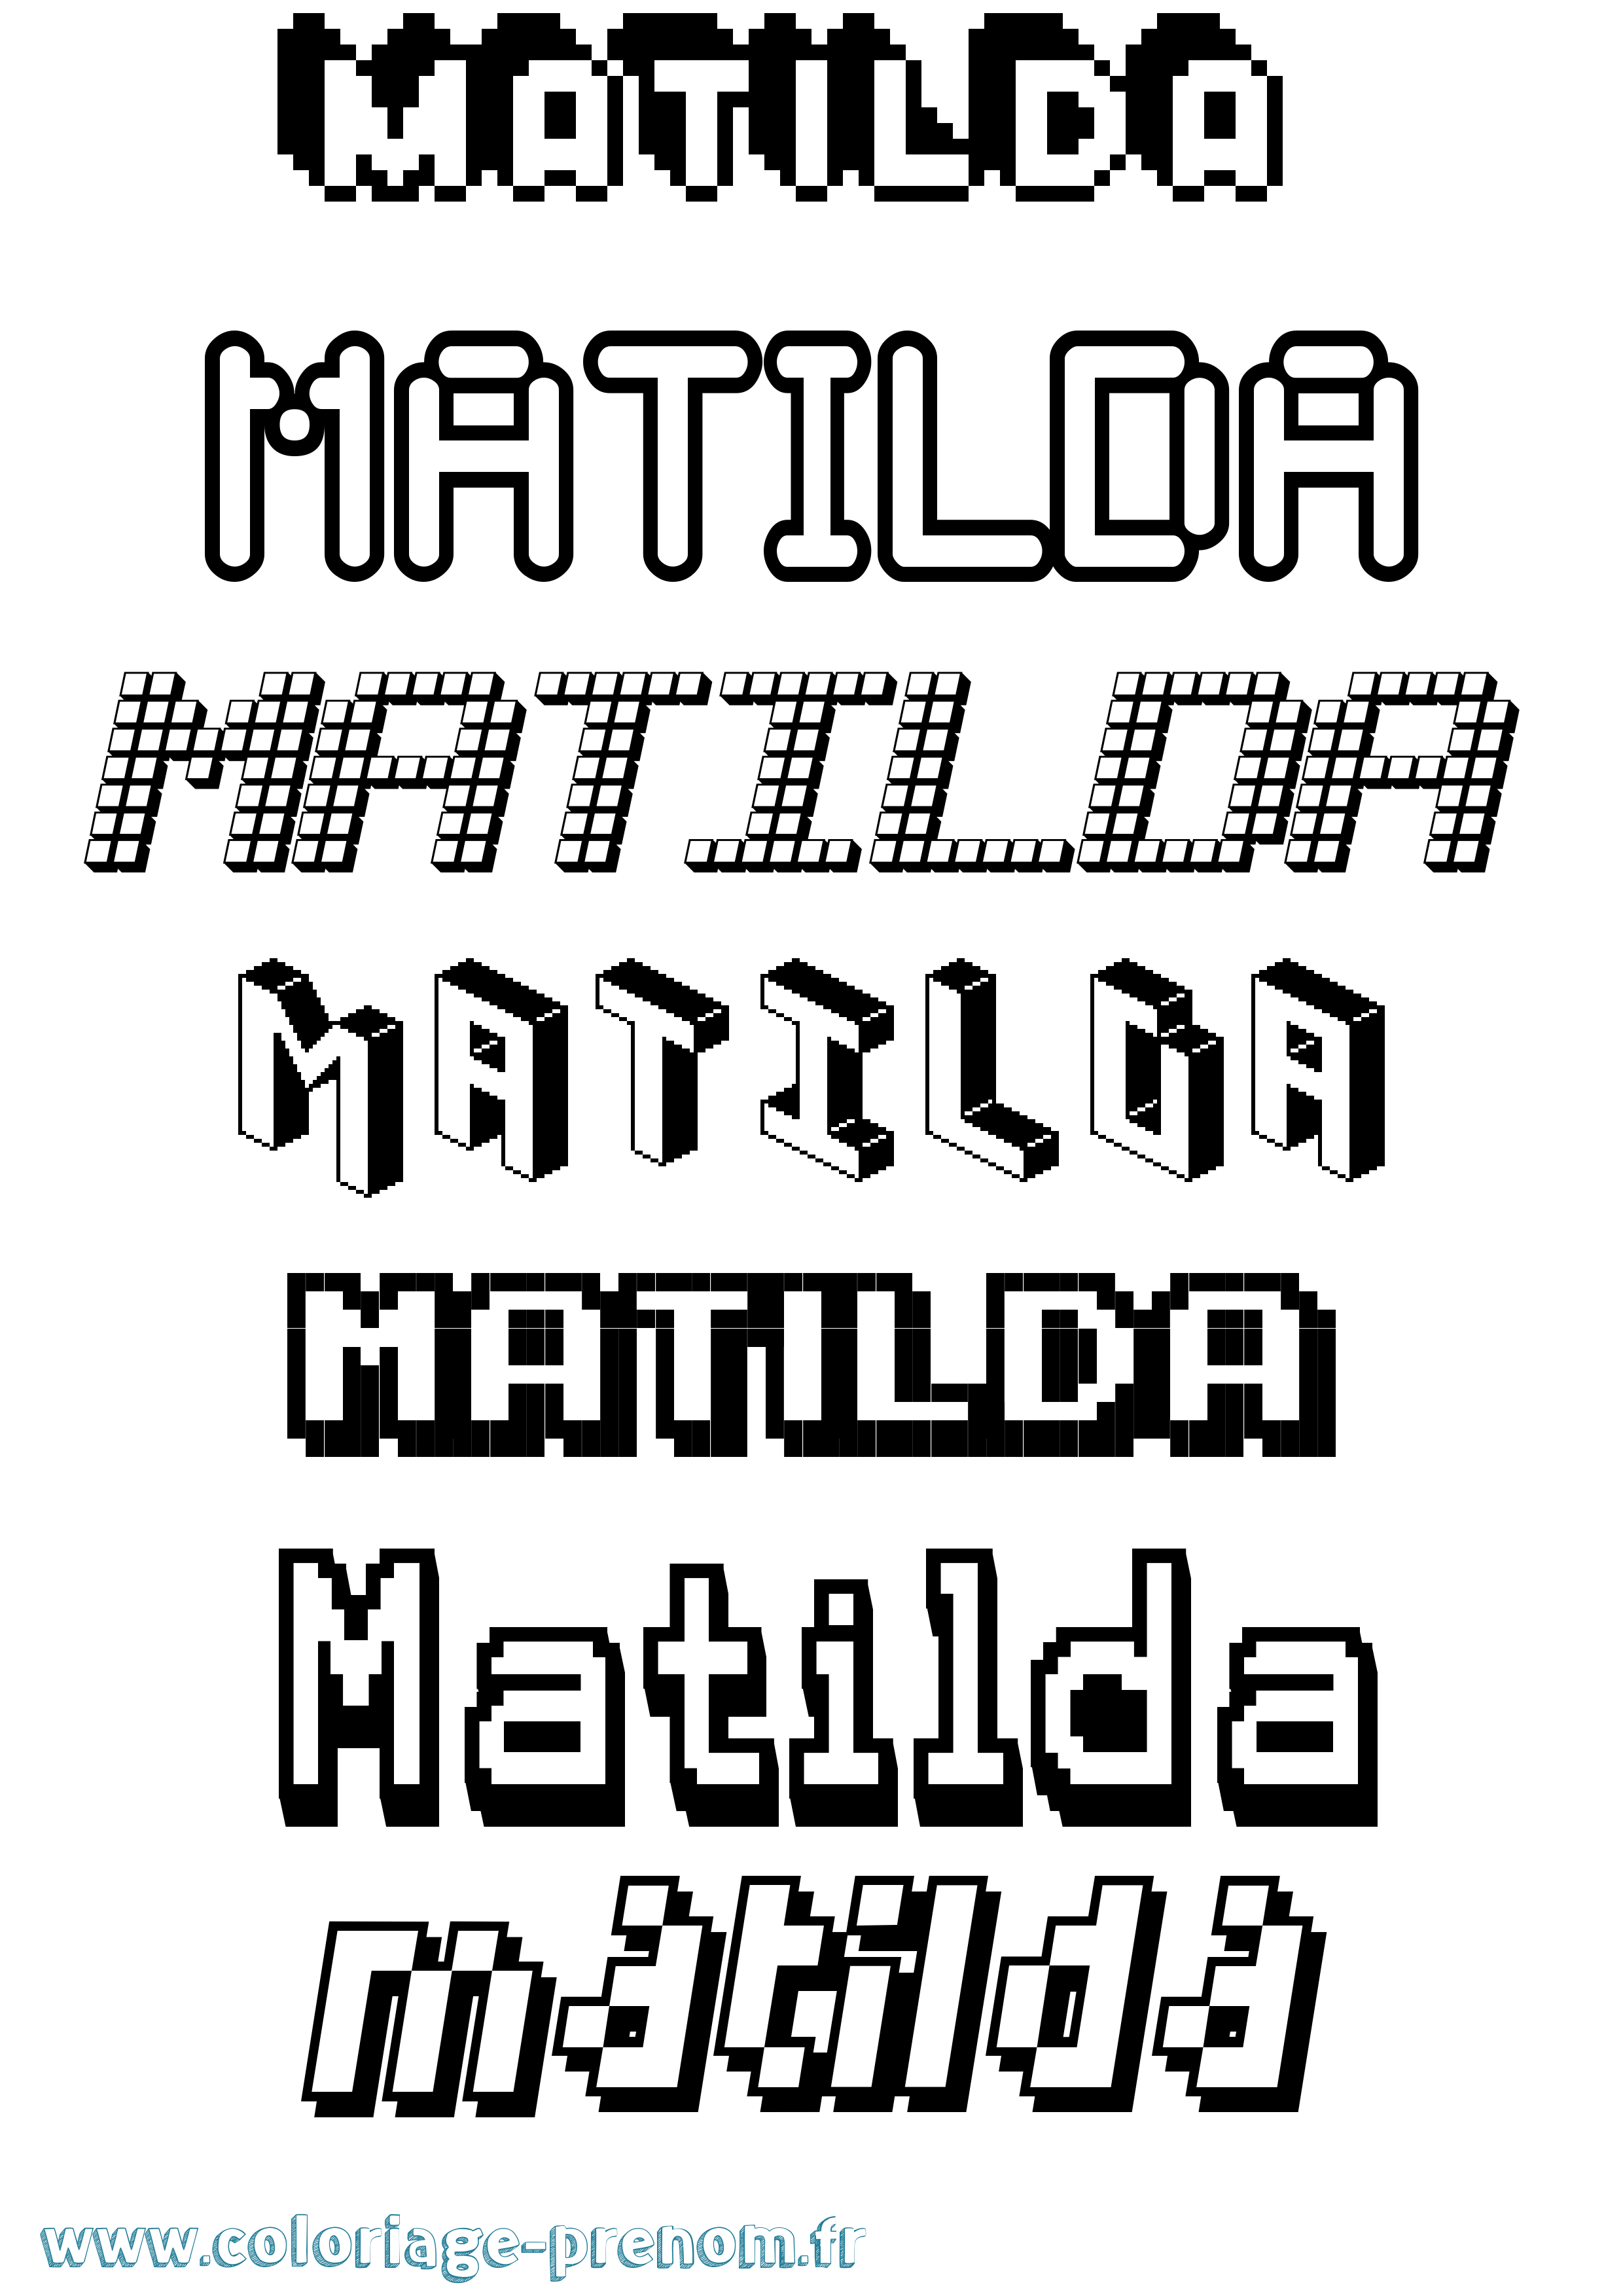 Coloriage prénom Matilda